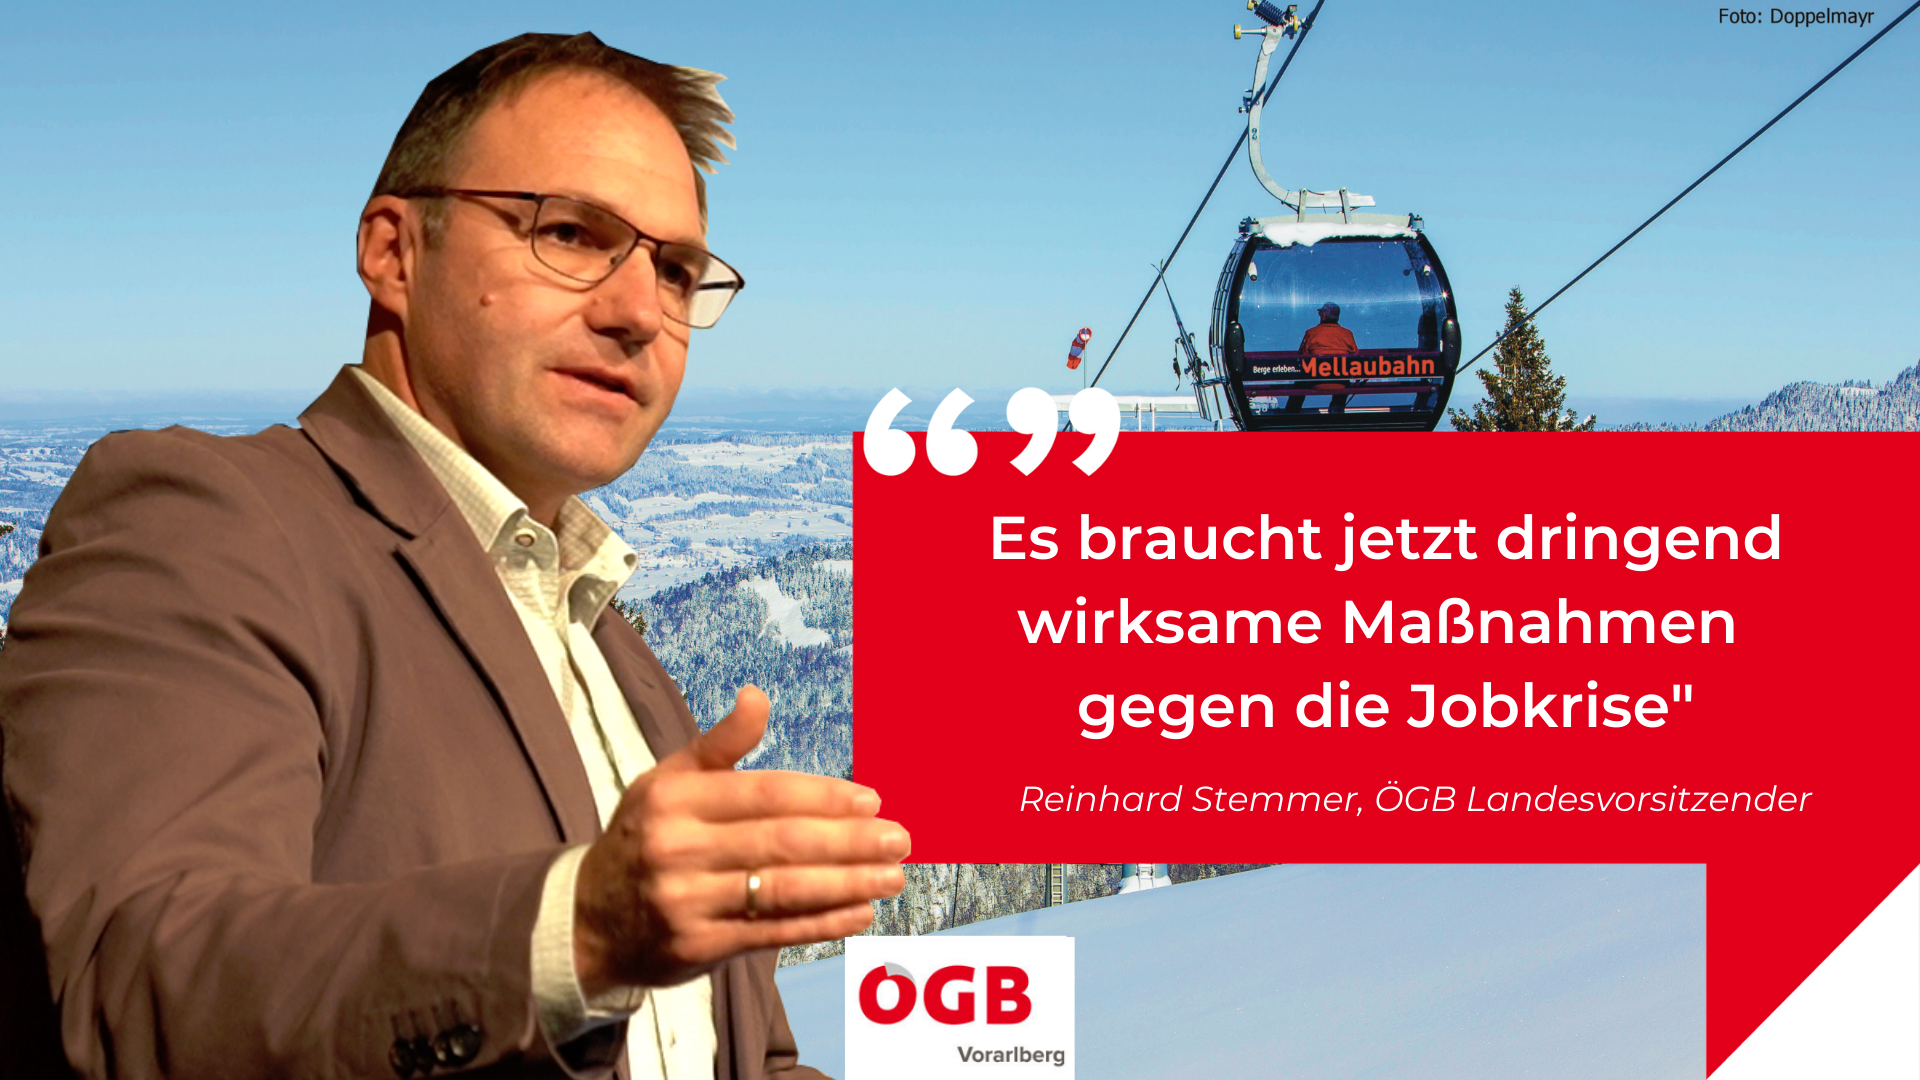 ÖGB-Landeschef Stemmer bedauert den Stellenabbau beim Seilbahnhersteller Doppelmayr.